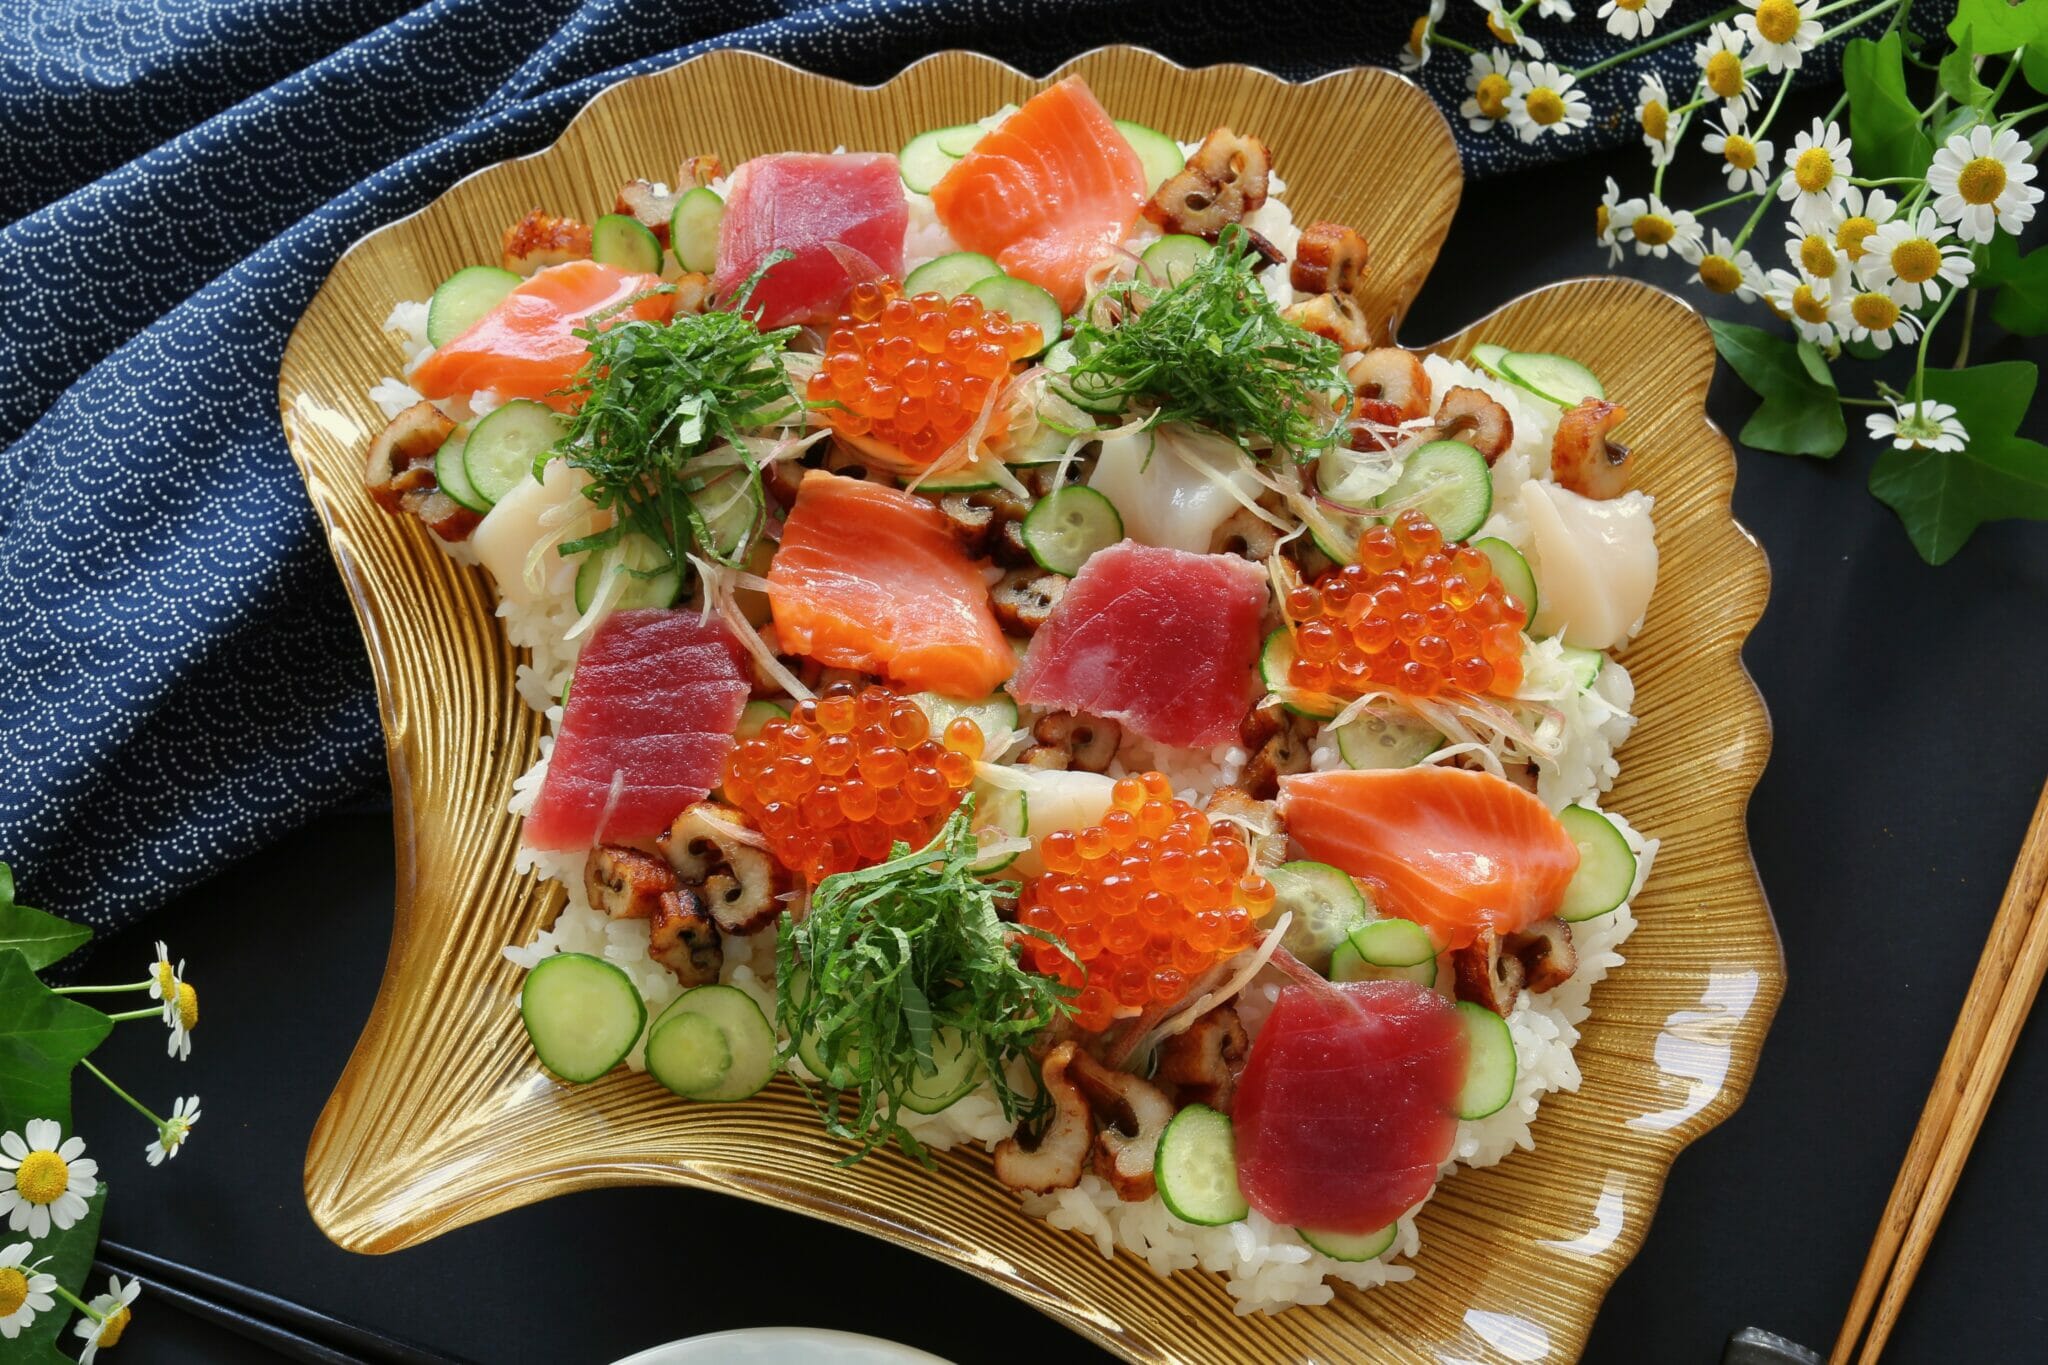 小林カツ代さんのちらし寿司のレシピ。酢飯は作りません。 やまでら くみこ のレシピ